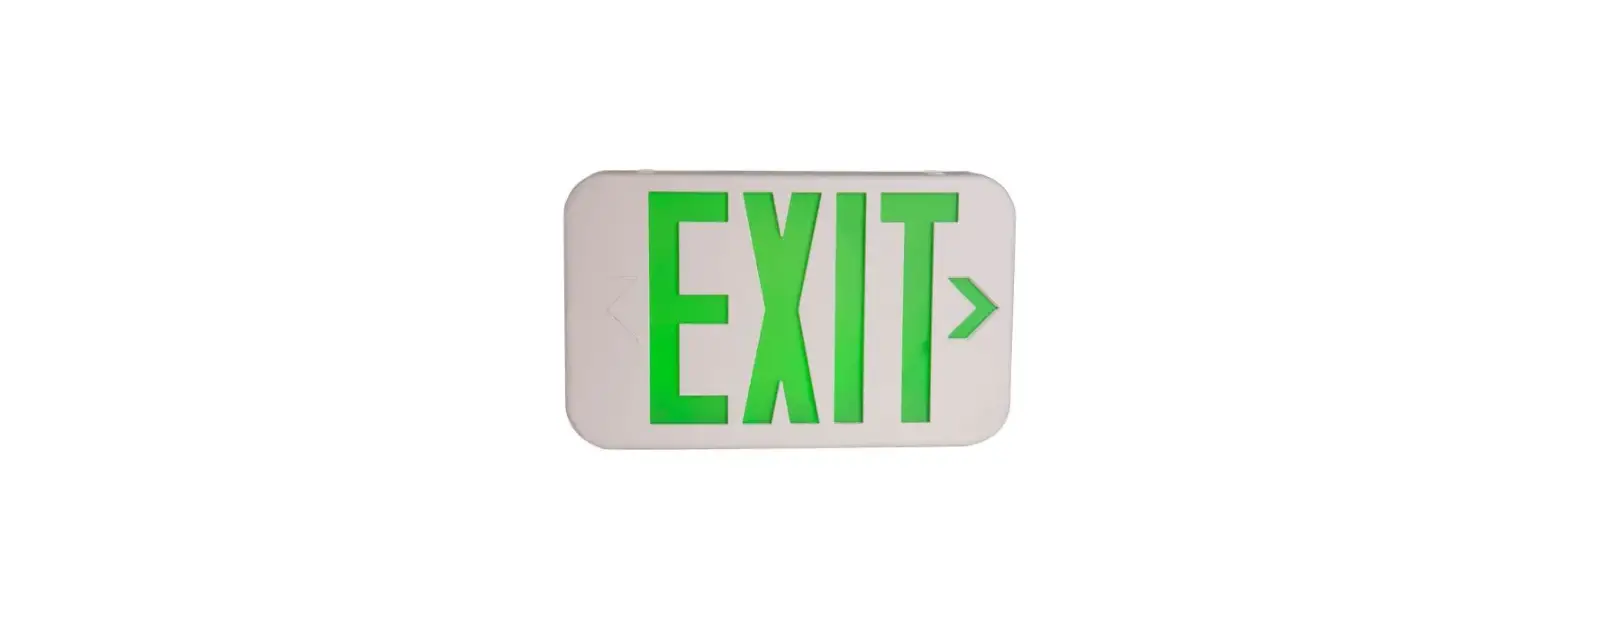 KXTE Die-Cast LED Exit Sign